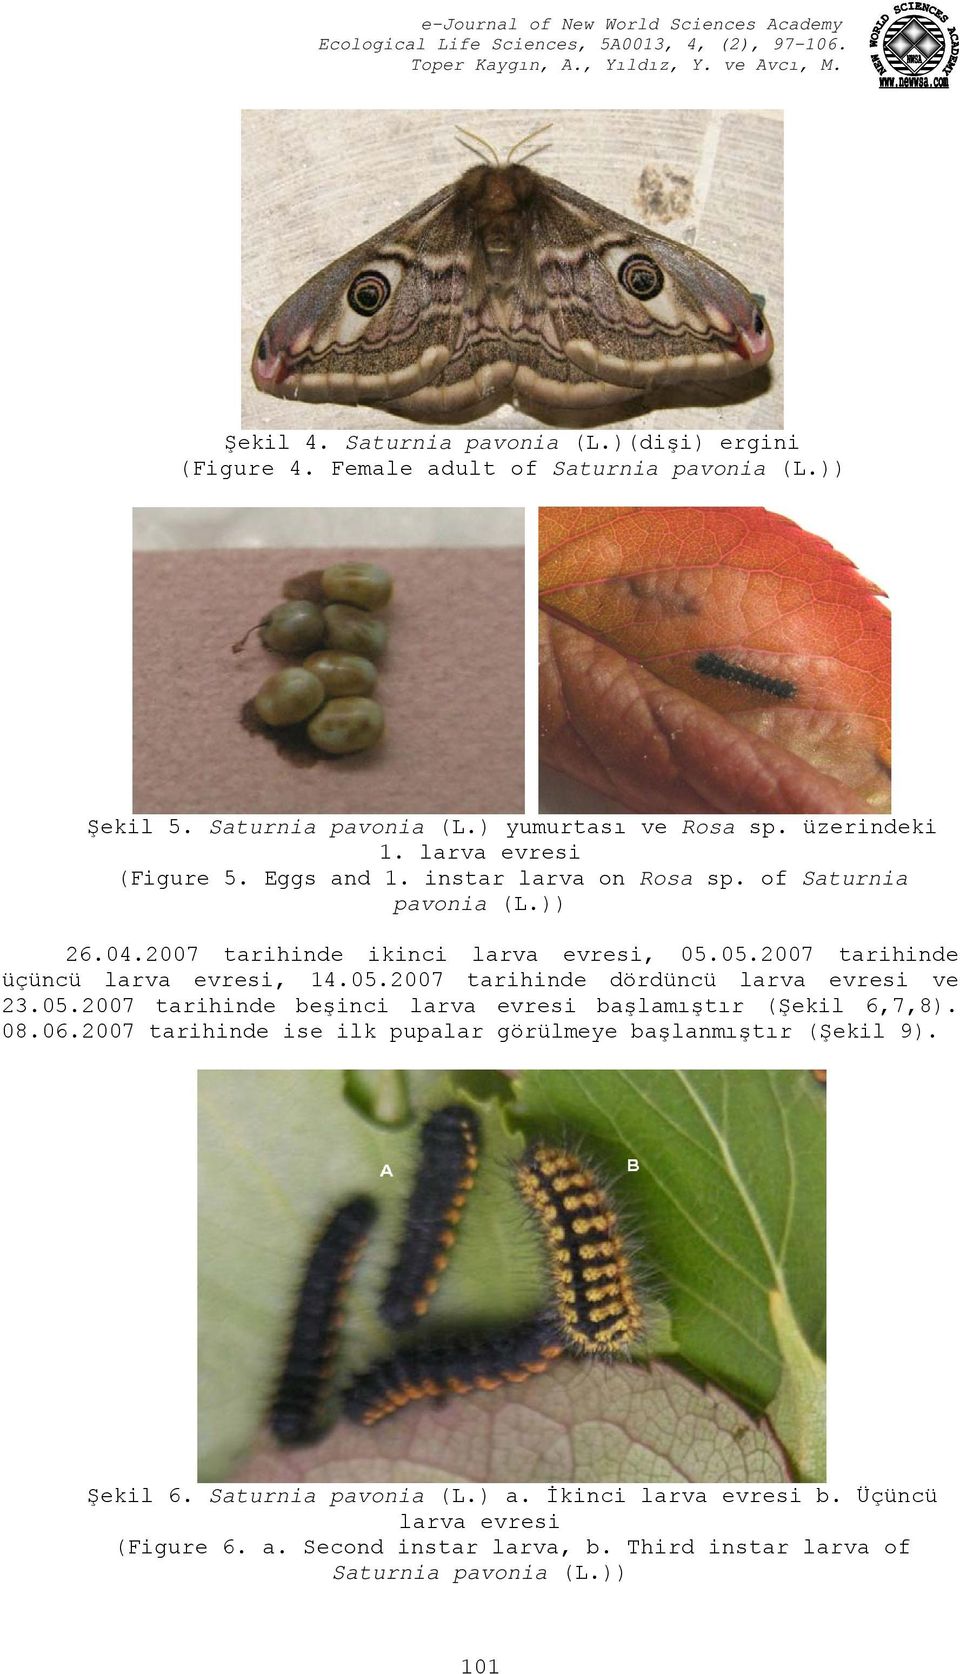 05.2007 tarihinde dördüncü larva evresi ve 23.05.2007 tarihinde beşinci larva evresi başlamıştır (Şekil 6,7,8). 08.06.